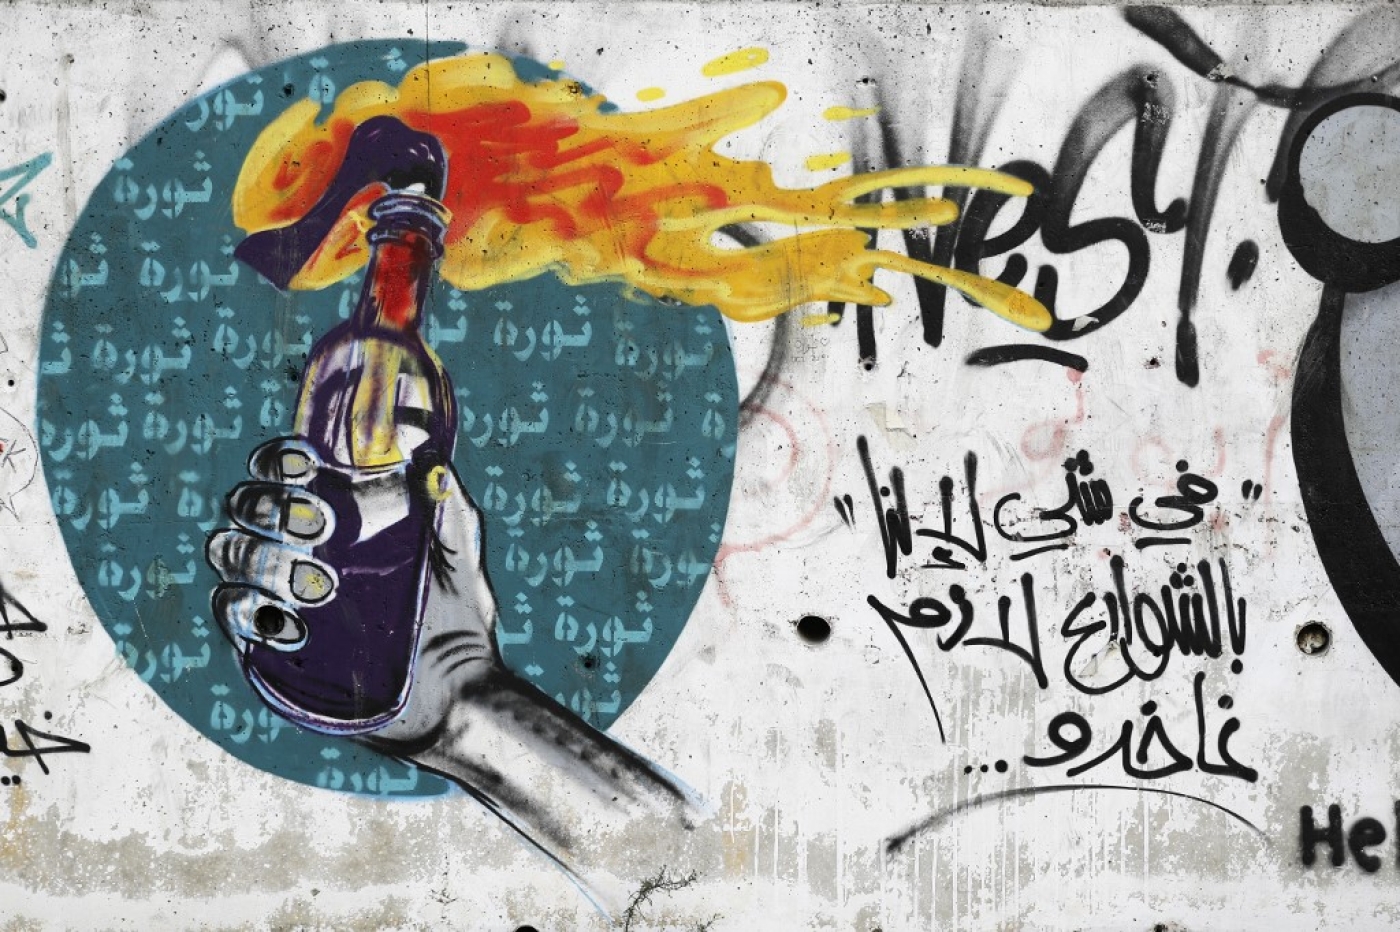 Graffiti d’une main tenant un cocktail molotov sur un mur du centre de Beyrouth, une photo prise le 5 novembre 2019 alors que des dizaines de milliers de Libanais manifestent pour dénoncer l’élite politique (AFP/Fayez Nureldine)